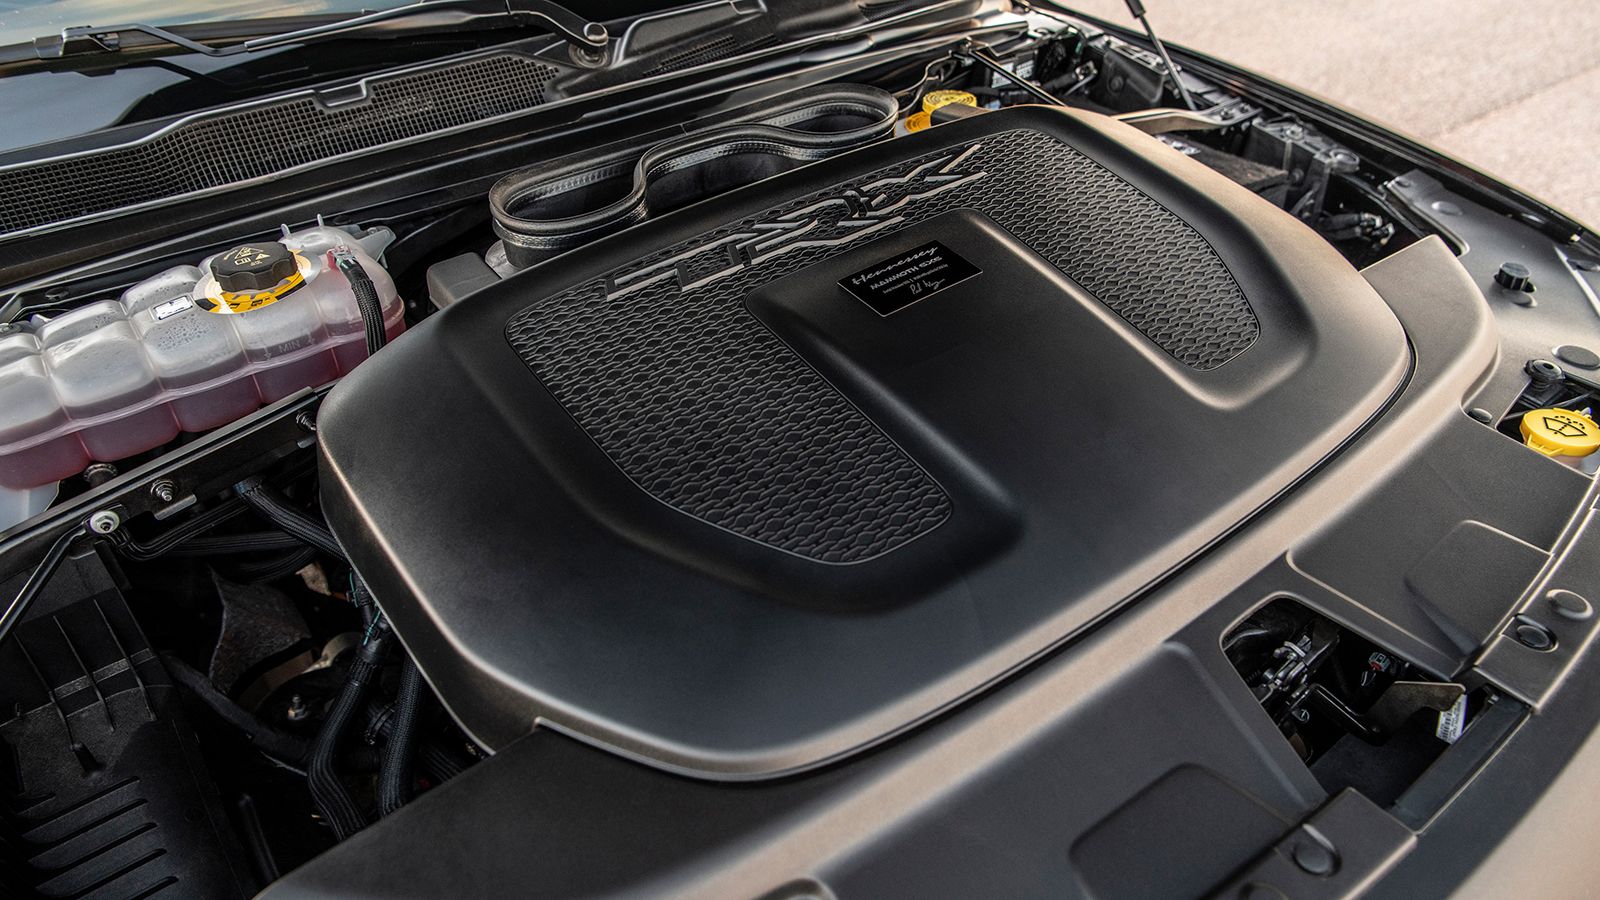 Υψηλότερη ισχύ κατά 310 ίππους (1.012 hp) και μεγαλύτερη ροπή κατά 433 Nm (1.314 Nm) εμφανίζει ο 6,2 λίτρων υπετροφοδοτούμενος Hellcat V8 κινητήρας, ύστερα από τις «περιποιήσεις» των μηχανικών της Hen